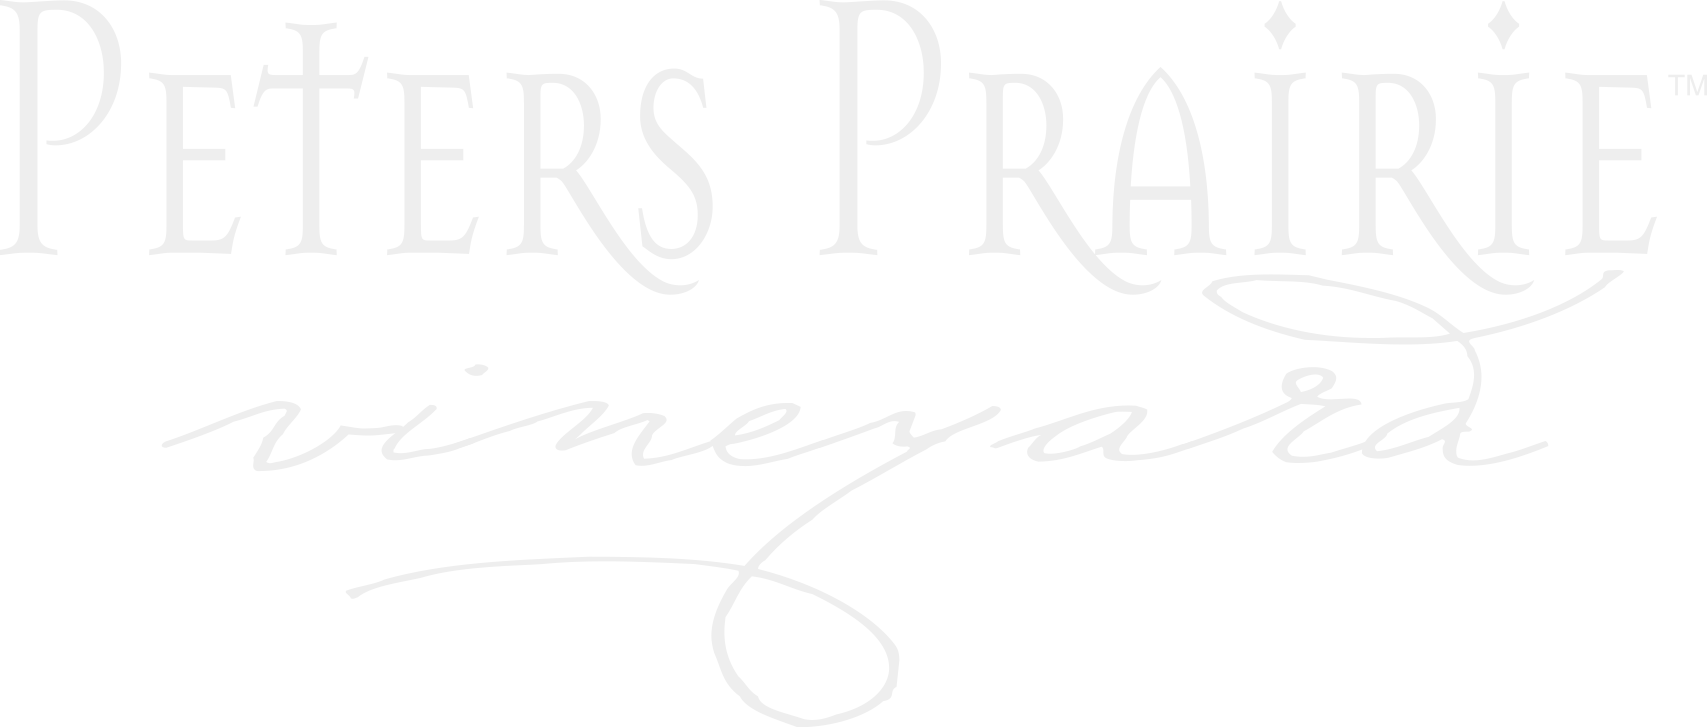 Peters Prairie Vineyard Scrolled light version of the logo (Link to homepage)